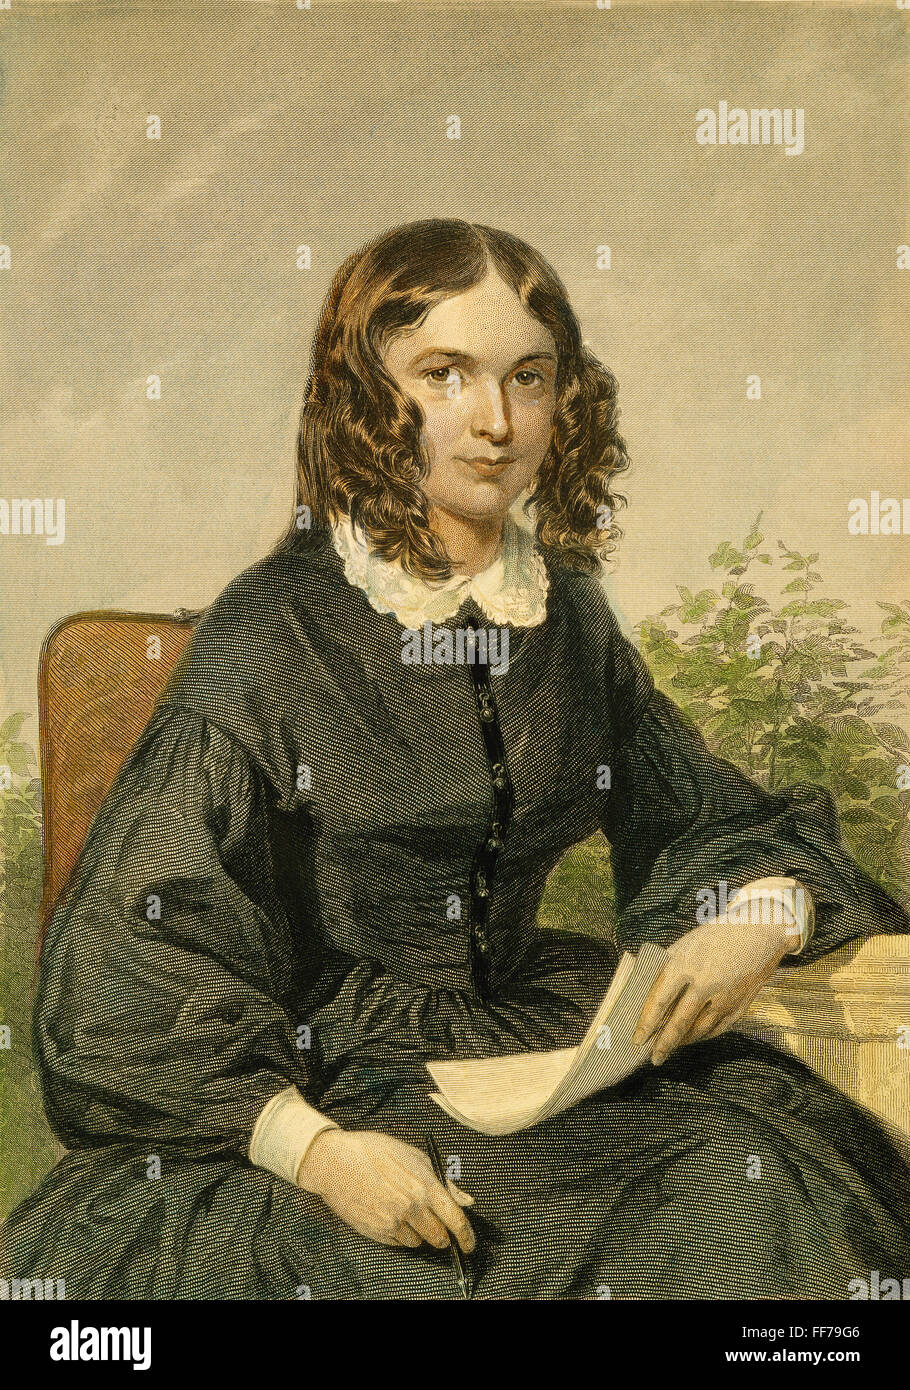 ELIZABETH BARRETT BROWNING /n(1806-1861). Poète anglais. Gravure sur acier, 19e siècle, d'après une peinture par Alonzo Chappel. Banque D'Images